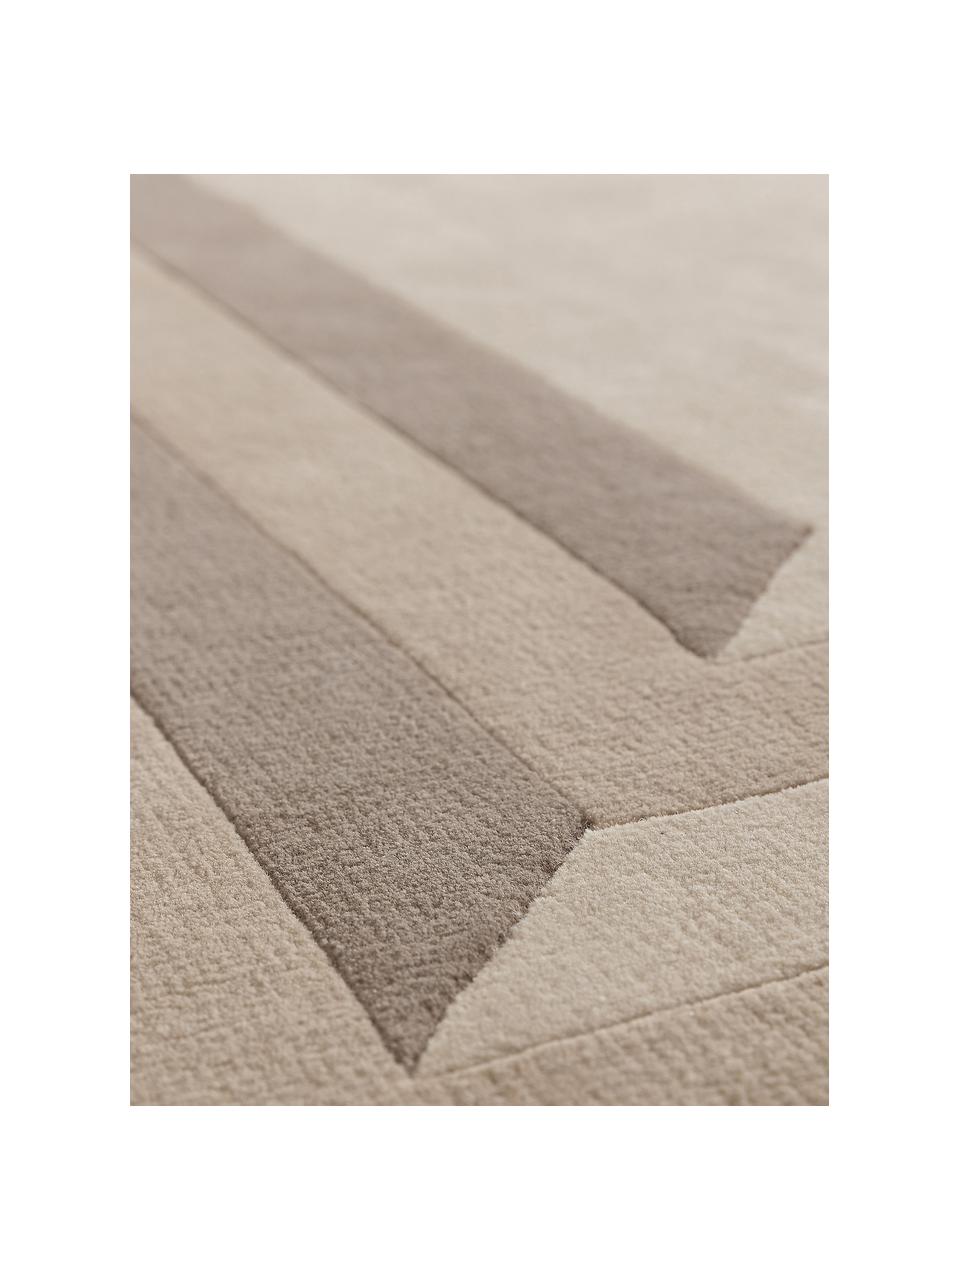 Ručně všívaný vlněný koberec Tilo, 100 % vlna

V prvních týdnech používání vlněných koberců se může objevit charakteristický jev uvolňování vláken, který po několika týdnech používání ustane., Odstíny béžové, Š 160 cm, D 230 cm (velikost M)